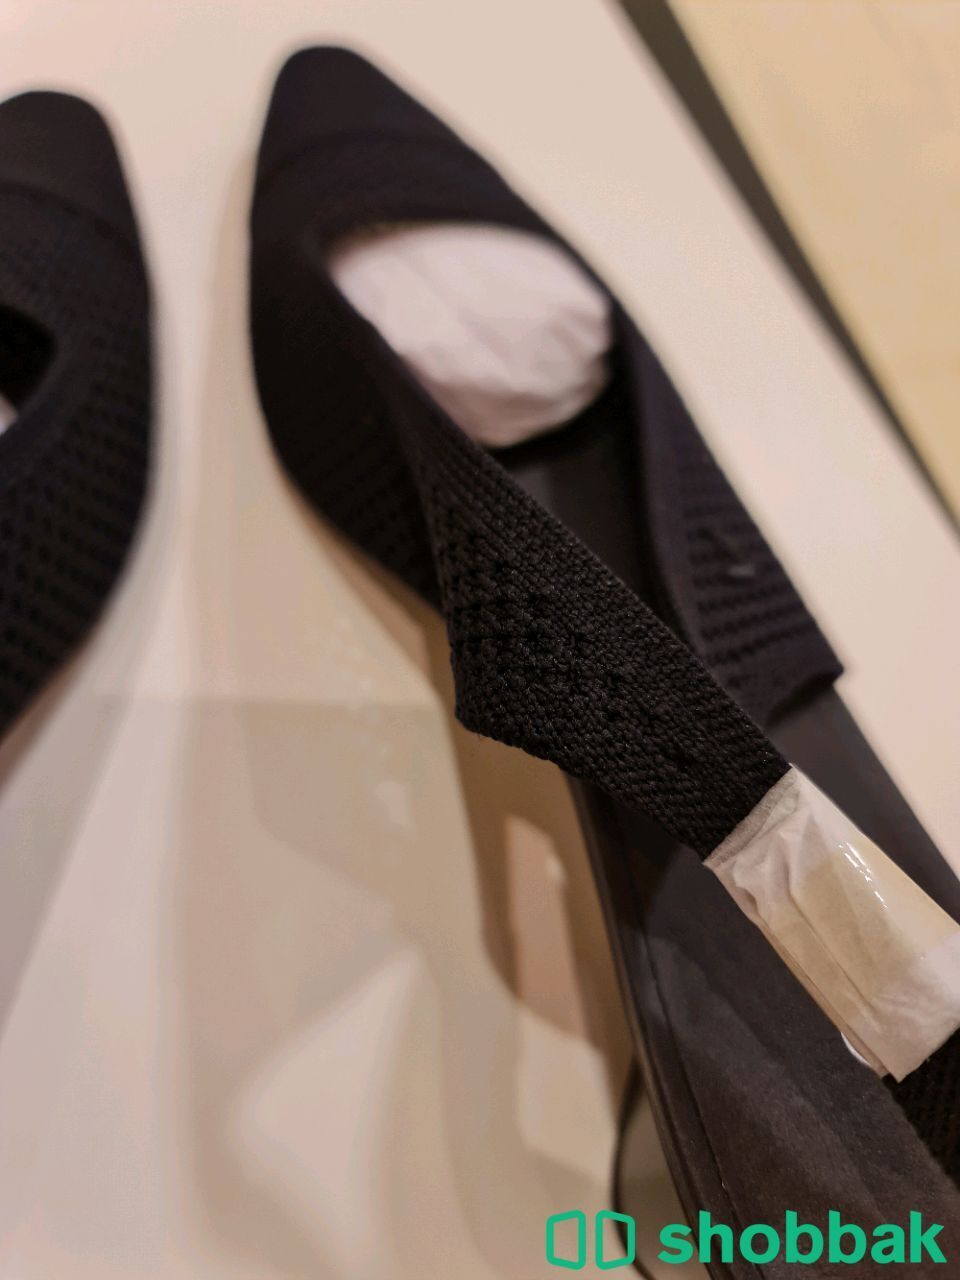 حذاء نسائي ماركة ڤيڤايا - مقاس 38 و اللون كُحلي شباك السعودية